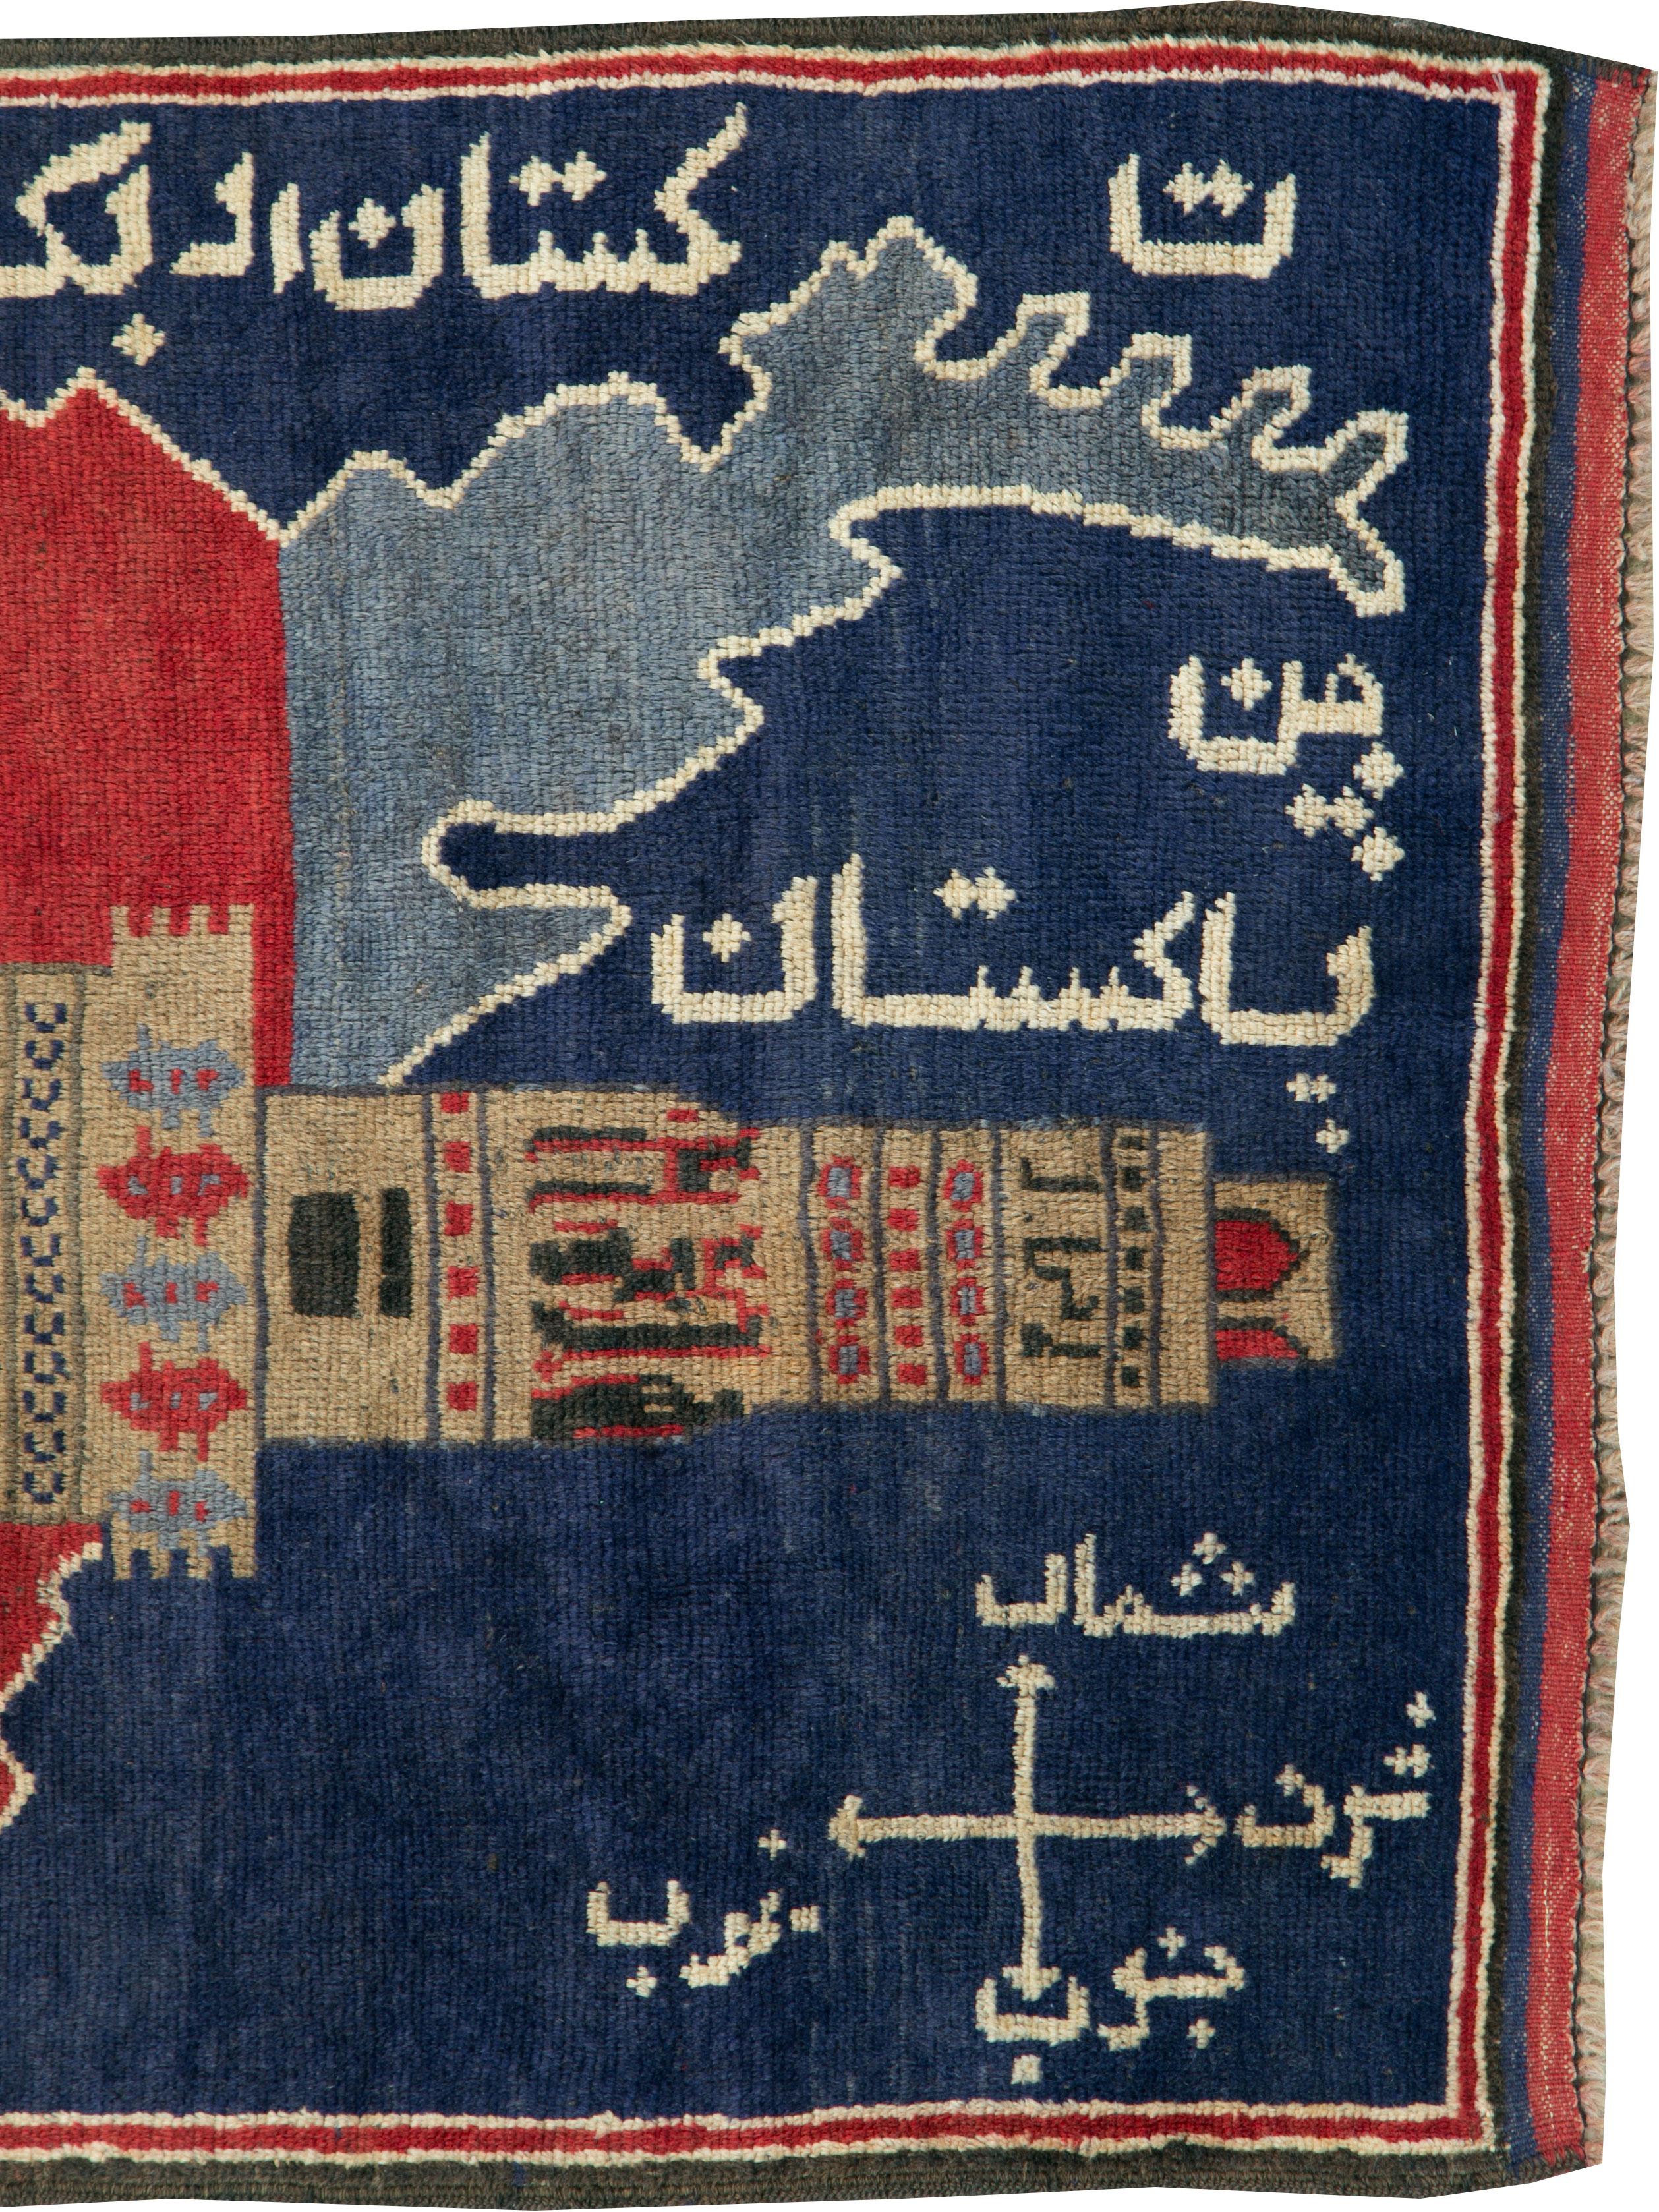 Ein alter afghanischer Bildkartenteppich aus der Mitte des 20. Jahrhunderts.

Maße: 3' 0